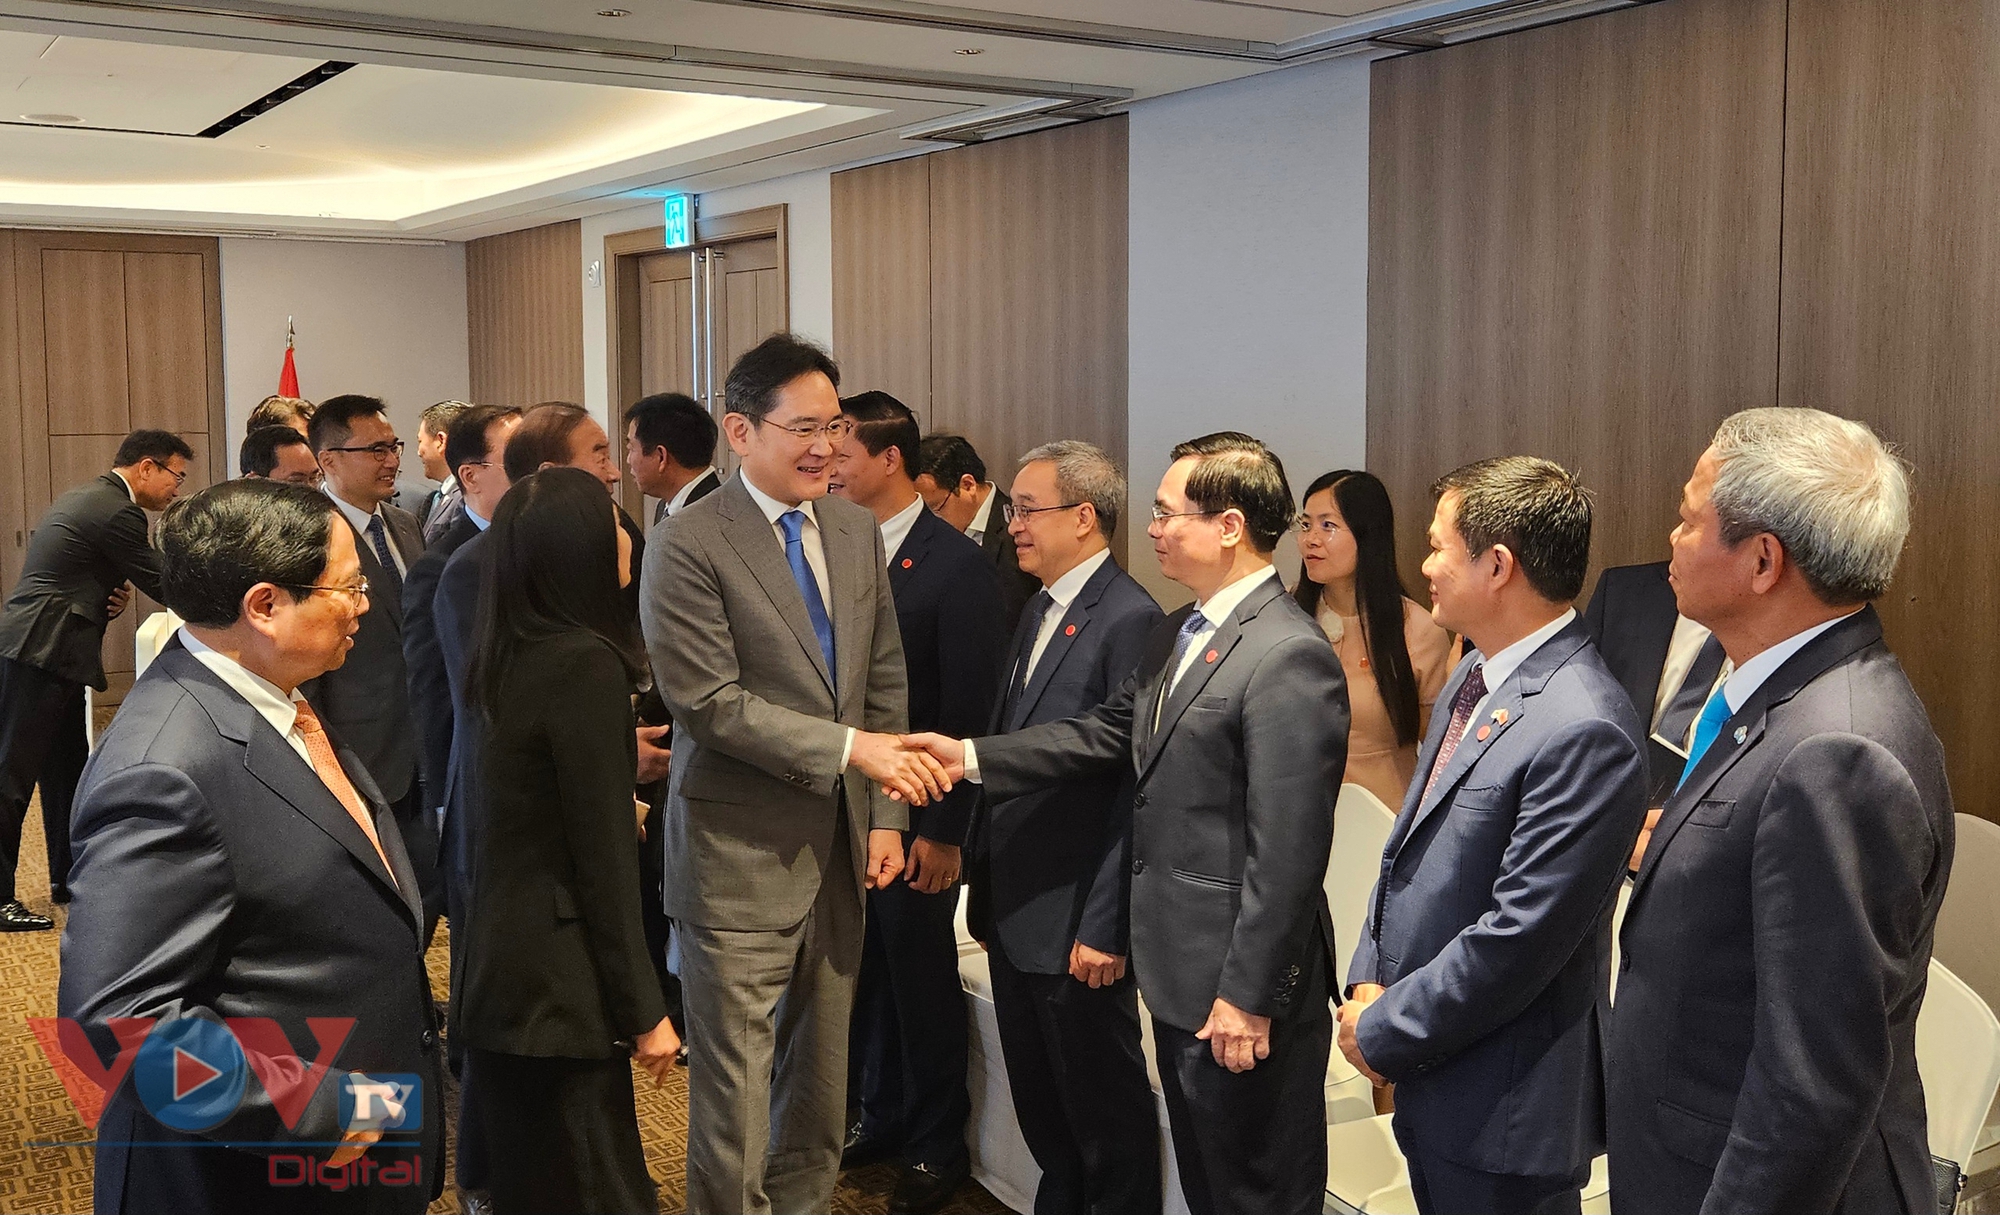 Thủ tướng Phạm Minh Chính tiếp Chủ tịch Samsung, hướng tới đột phá trong các lĩnh vực hợp tác mới- Ảnh 2.